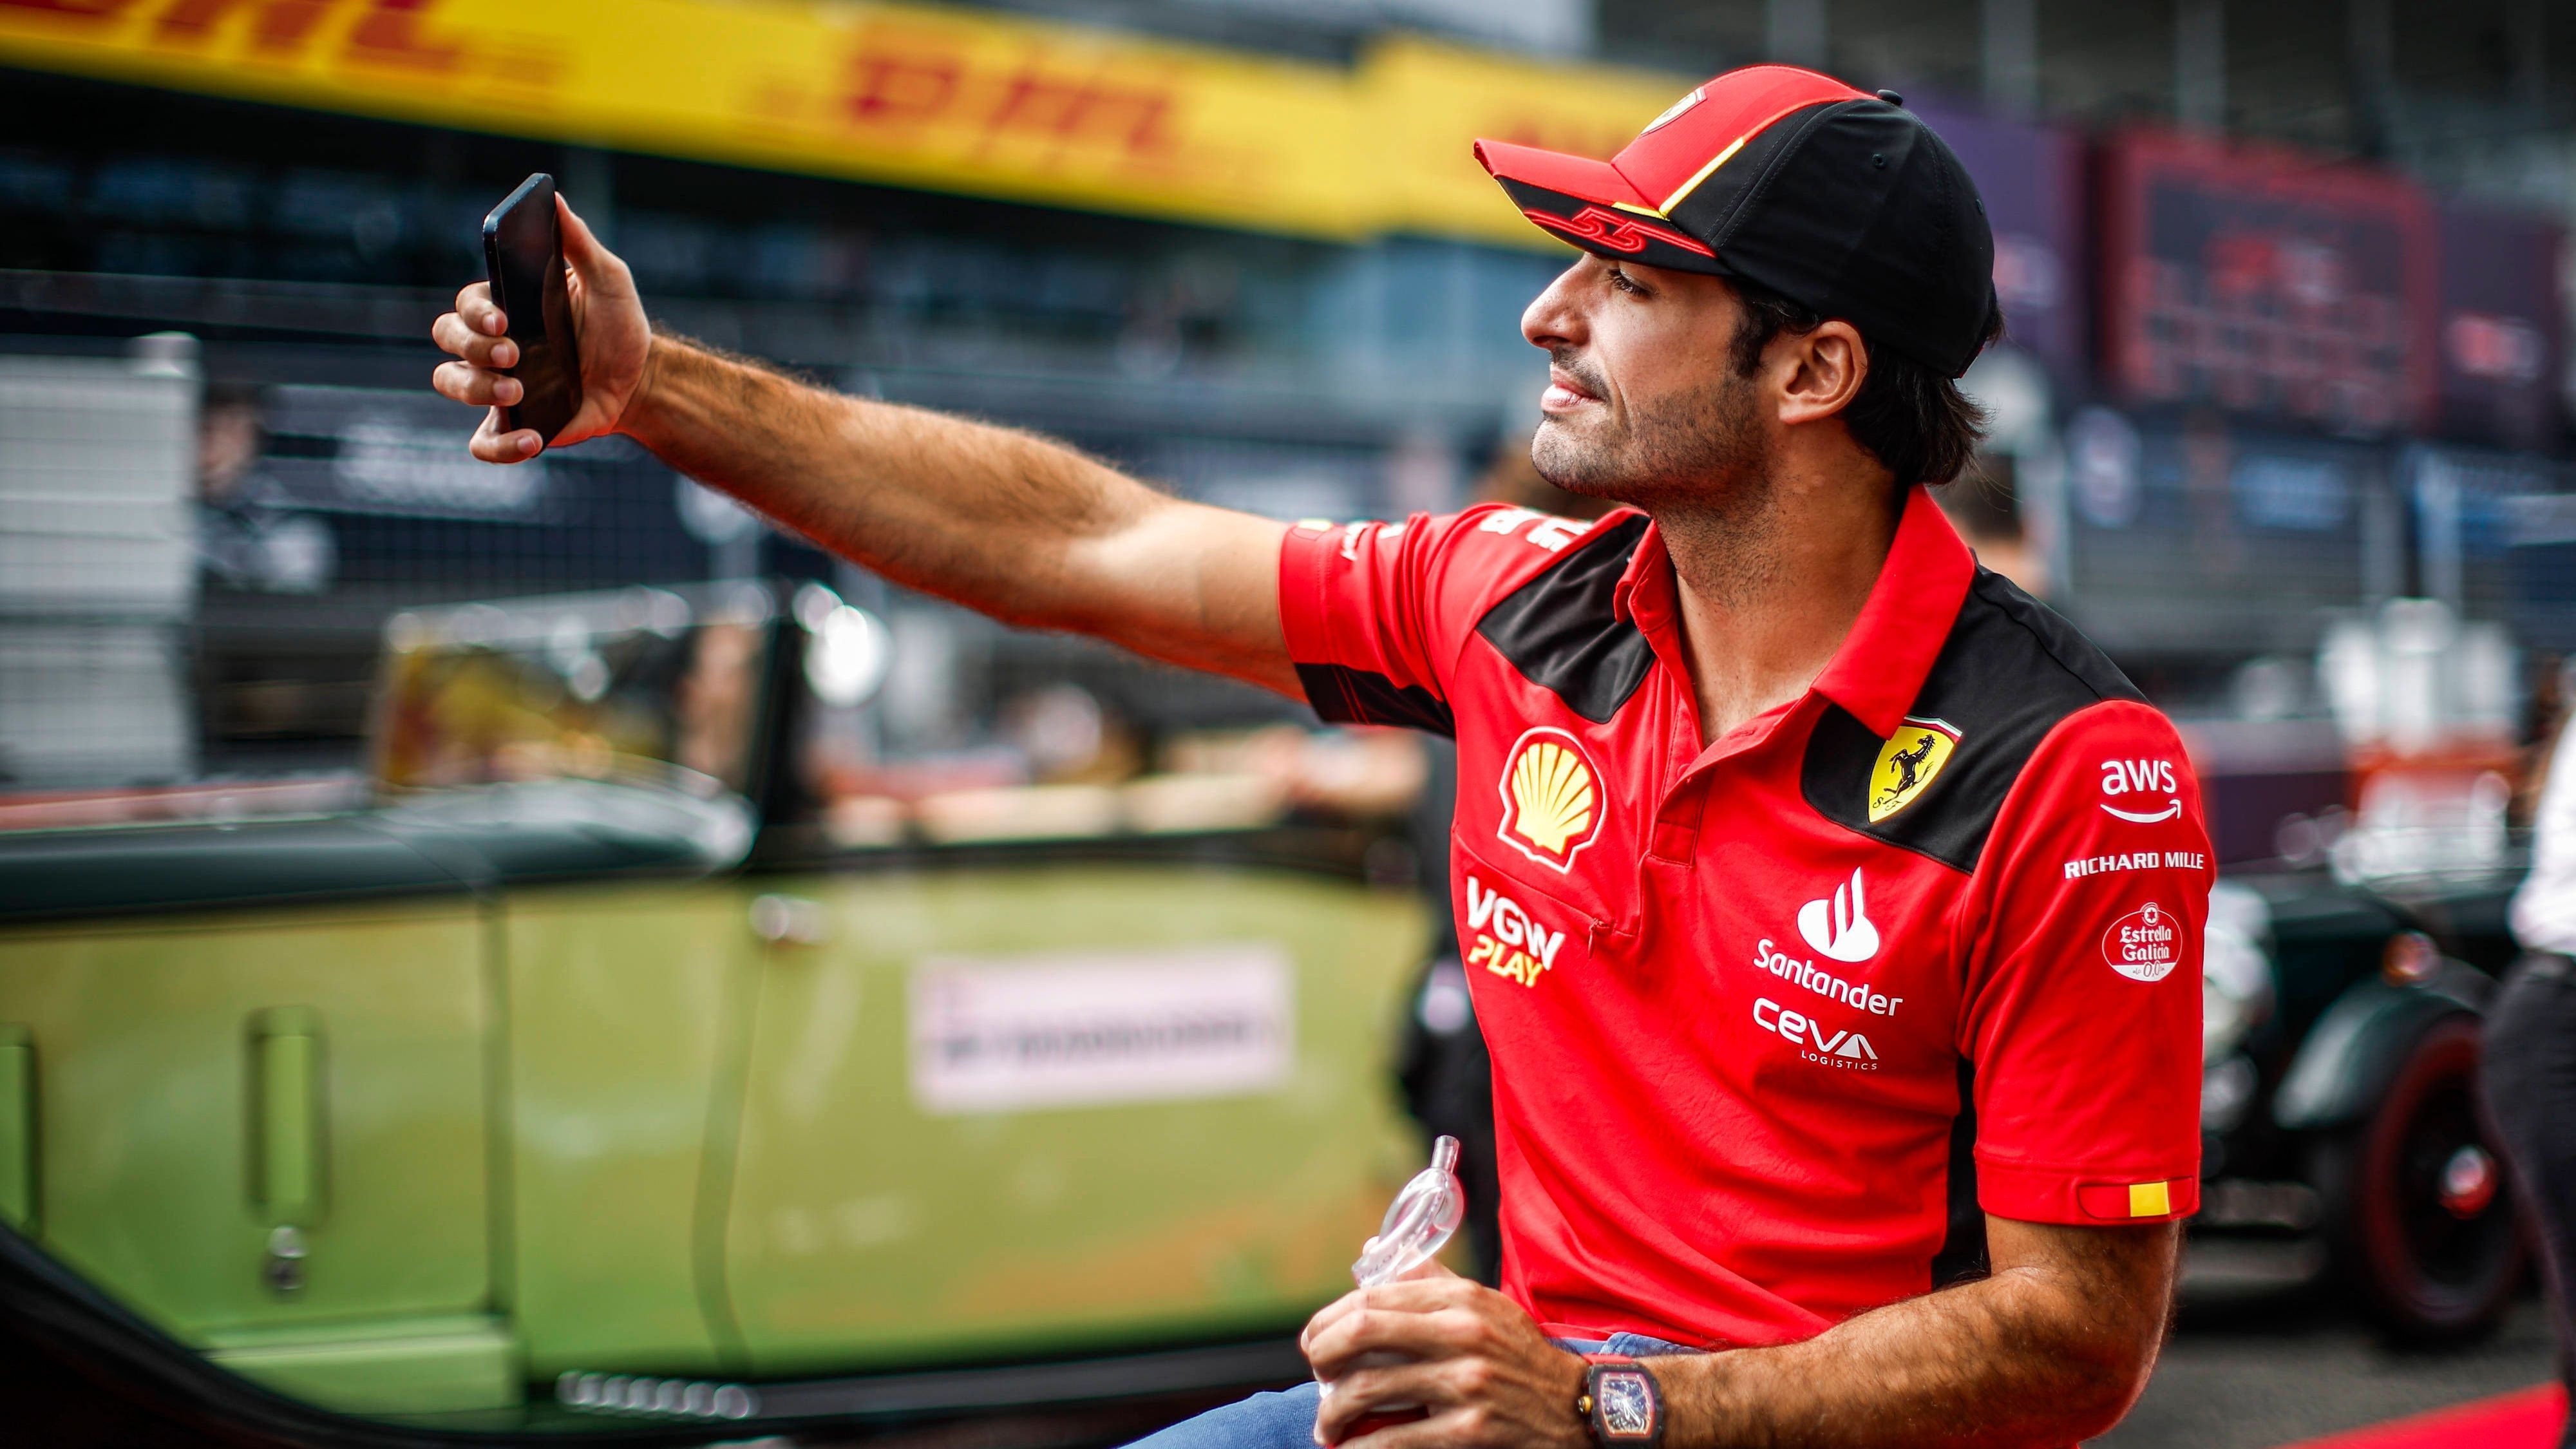 <strong>Carlos Sainz</strong><br>Team: Ferrari<br>Vertragsende: 2024 (wird zur Saison 2025 durch Hamilton ersetzt und ist damit aktuell auf der Suche nach einem neuen Rennstall)